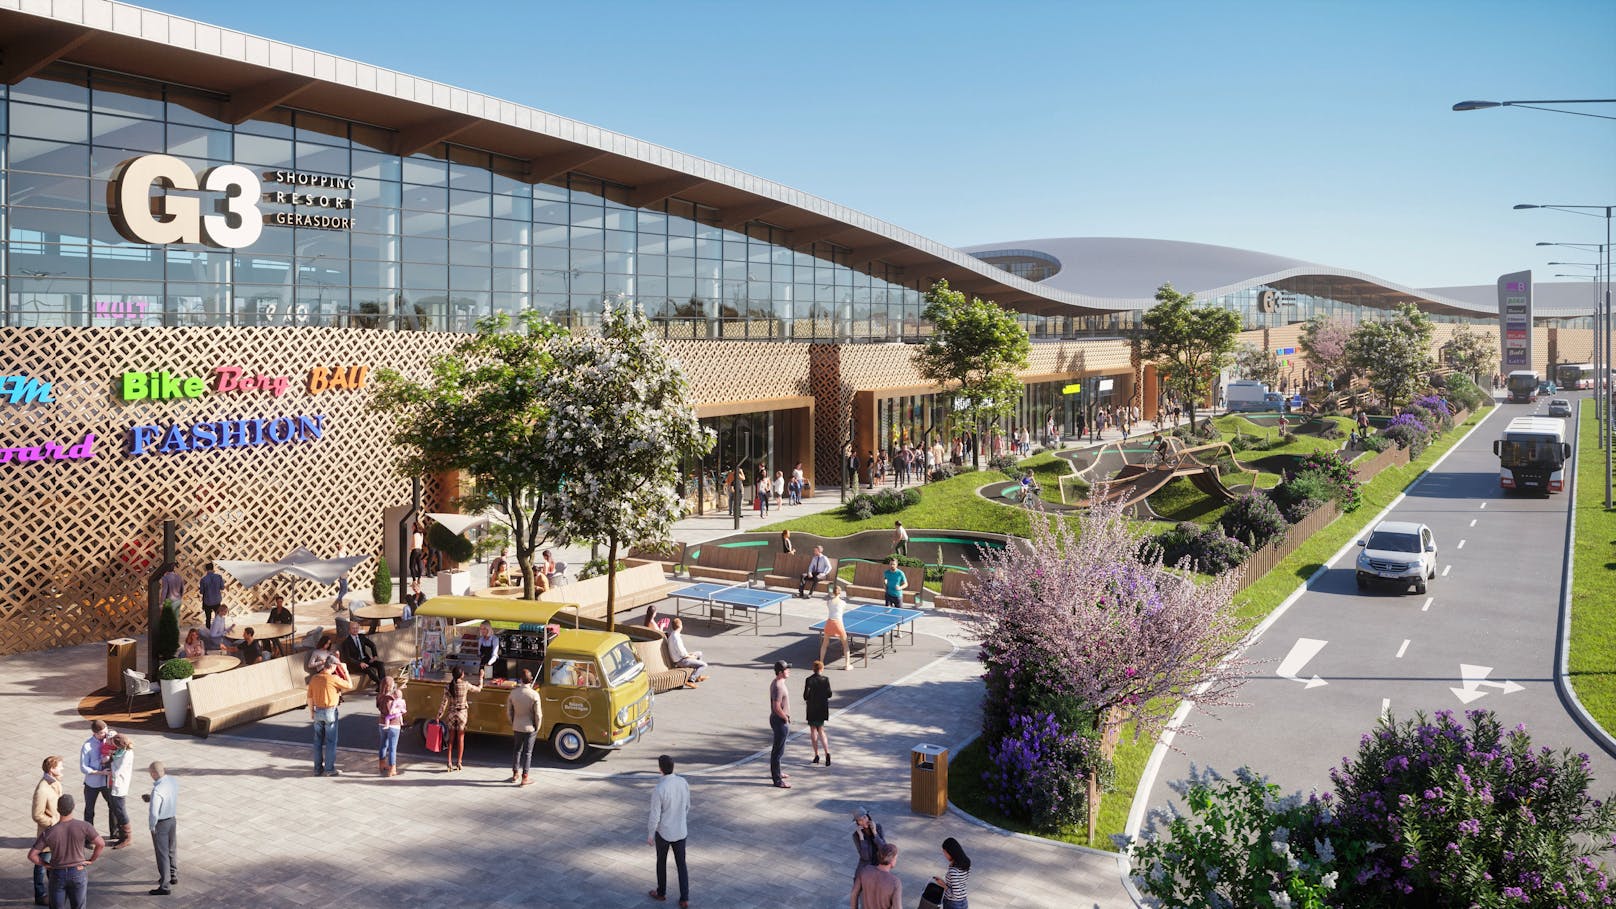 So soll die geplante neue Sportwelt im Shopping Resort G3 aussehen.